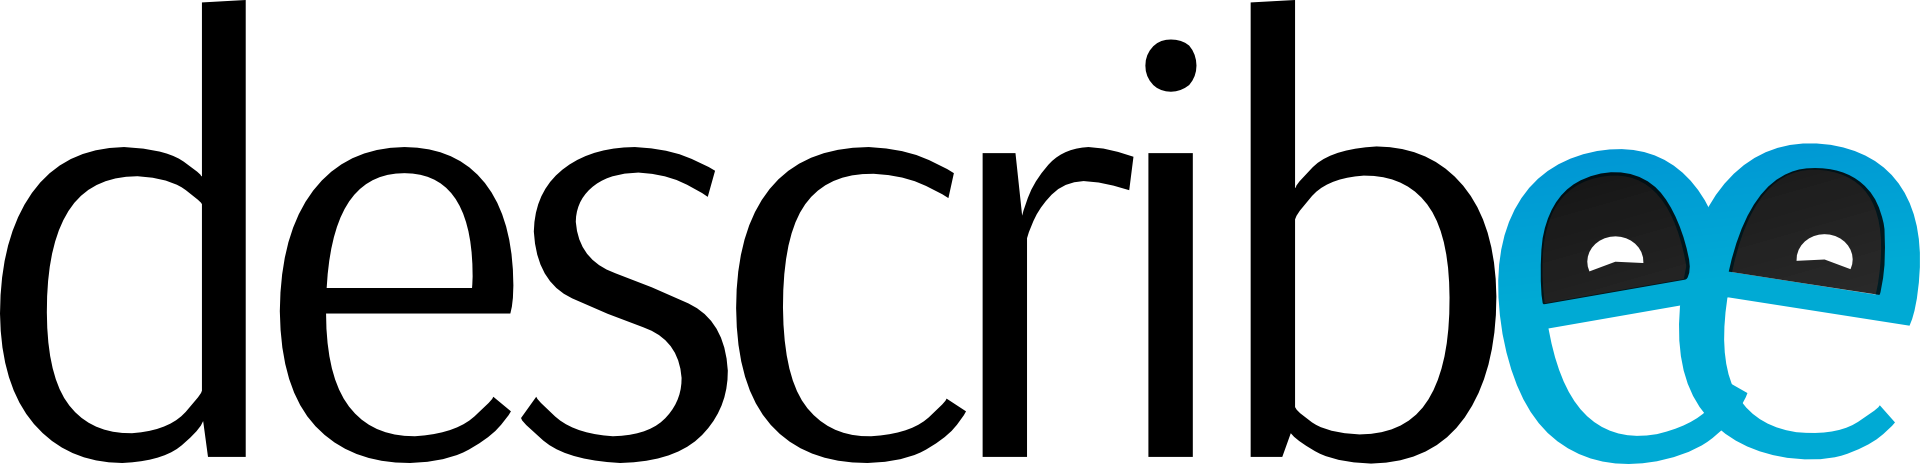 Full Describee Logo (Black Variant)